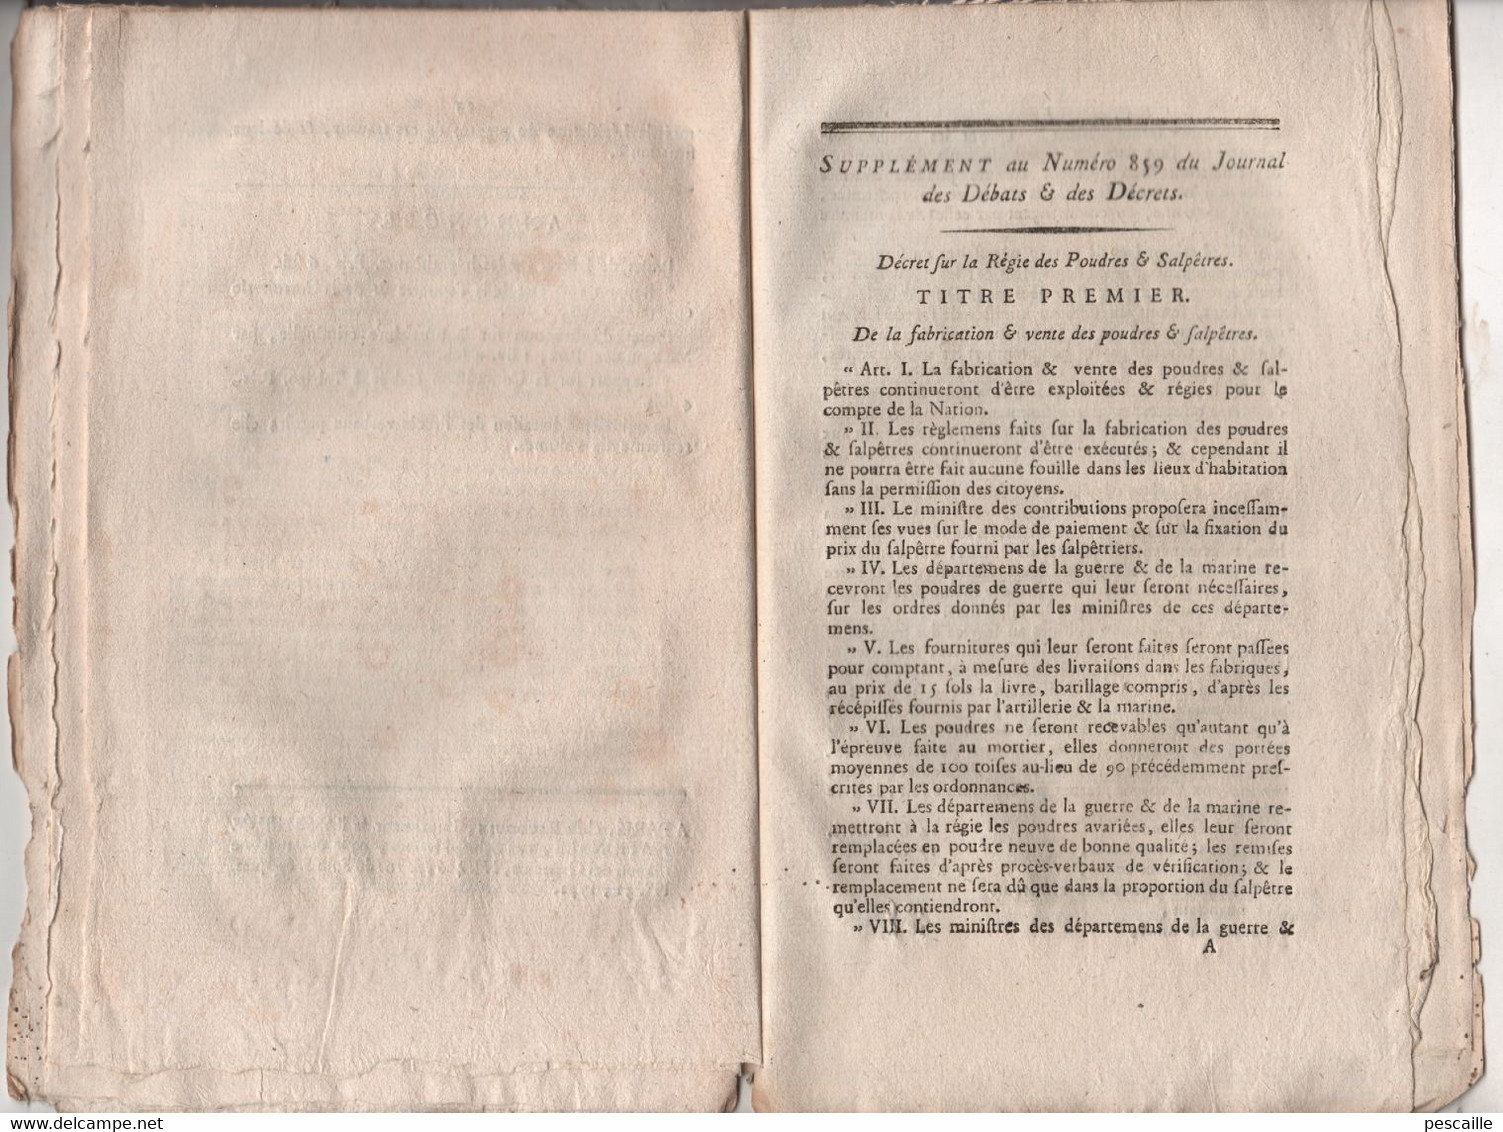 REVOLUTION FRANCAISE JOURNAL DES DEBATS 26 09 1791 - LOIS RURALES - GARDES CHAMPETRES - ROUEN - POUDRES SALPETRES - Newspapers - Before 1800